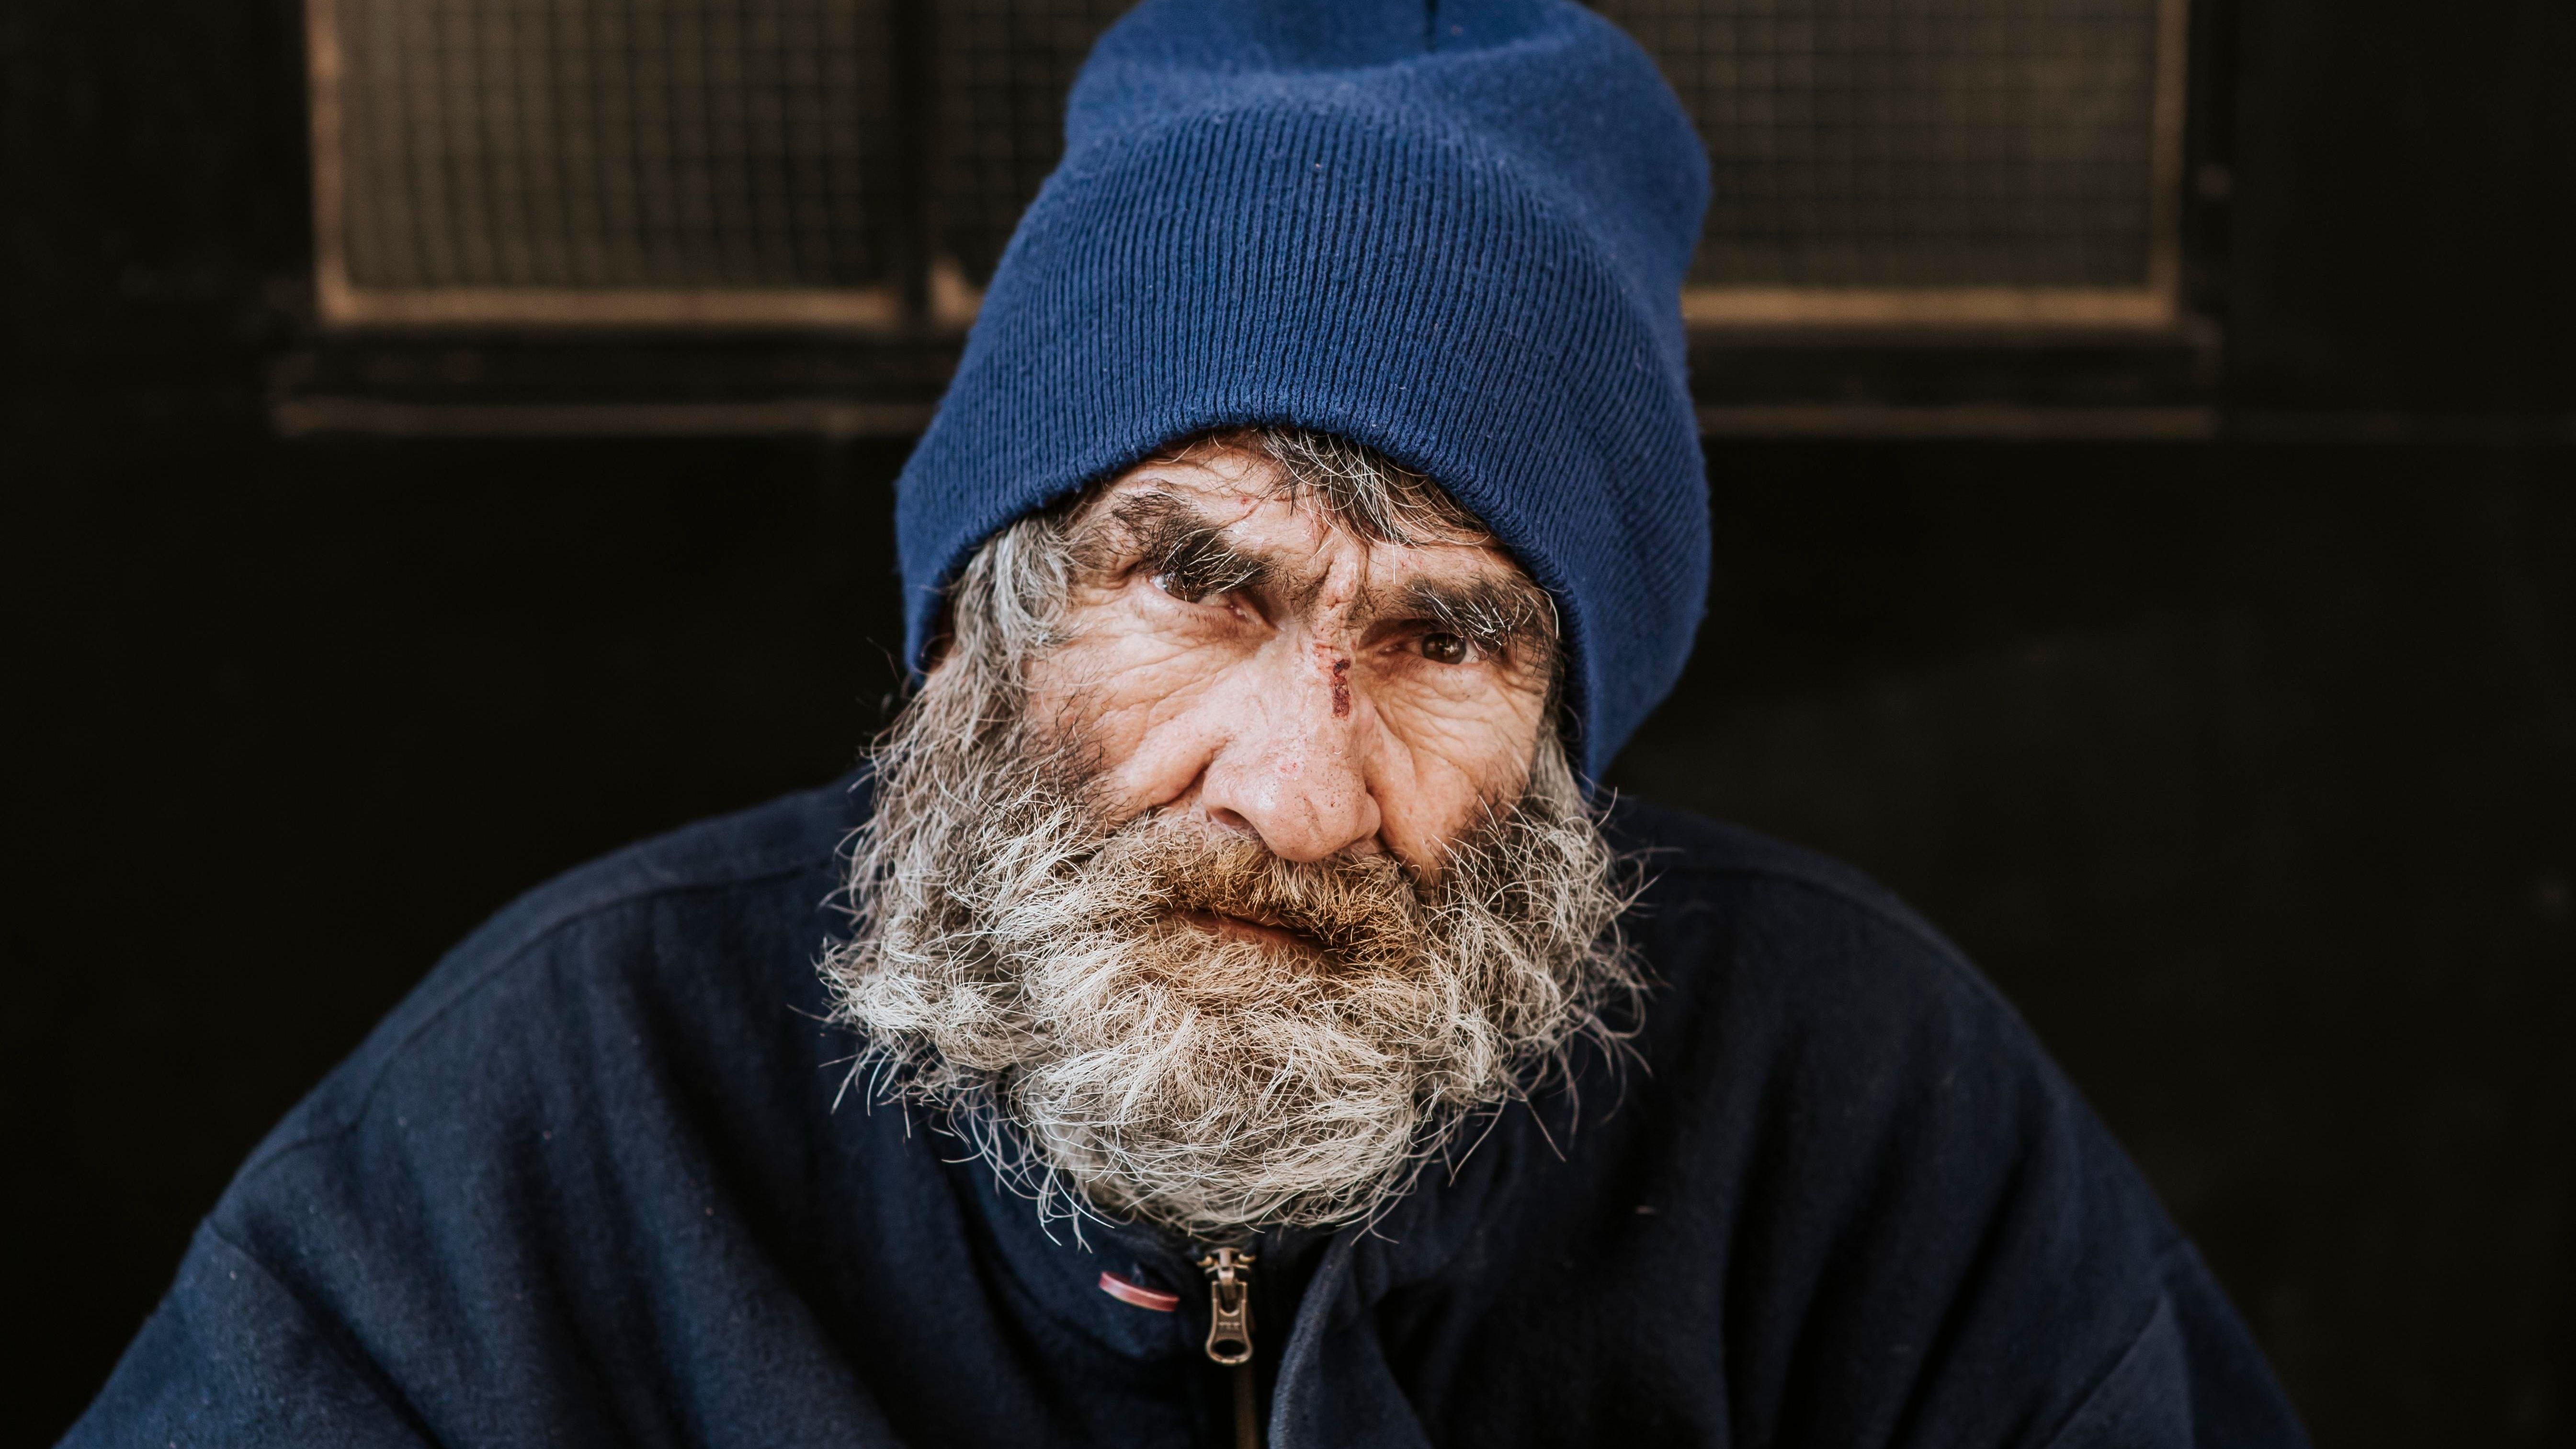 Obdachlosigkeit ist ein großes Problem - erfahre hier wie du helfen kannst.